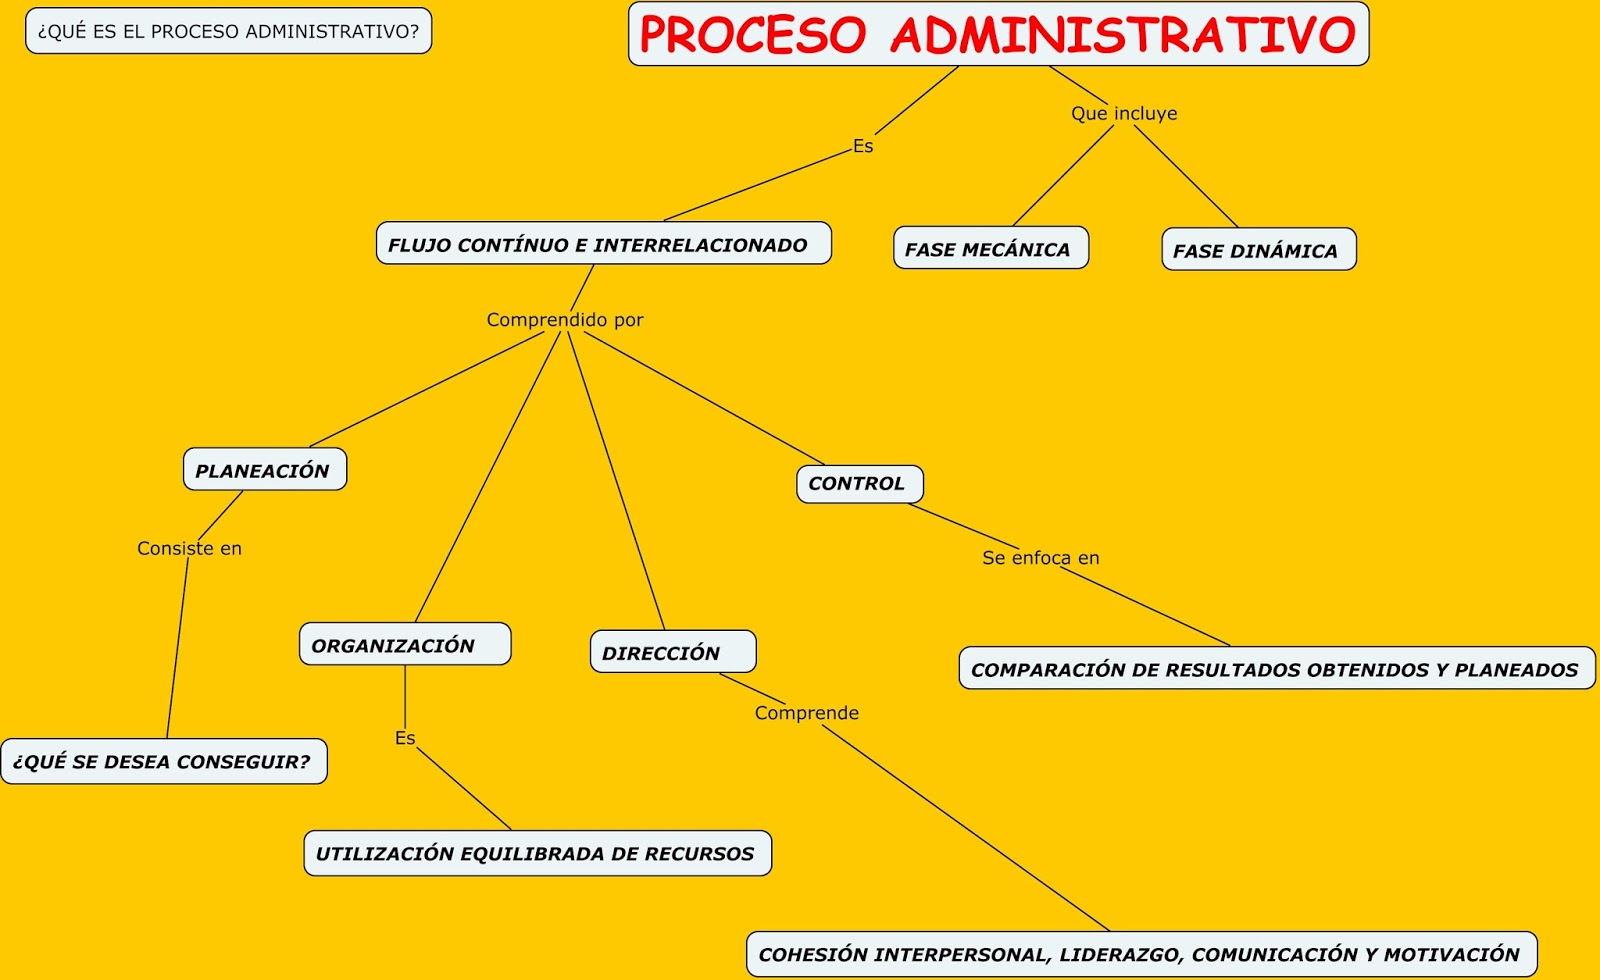 Mapa conceptual de direccion en el proceso administrativo